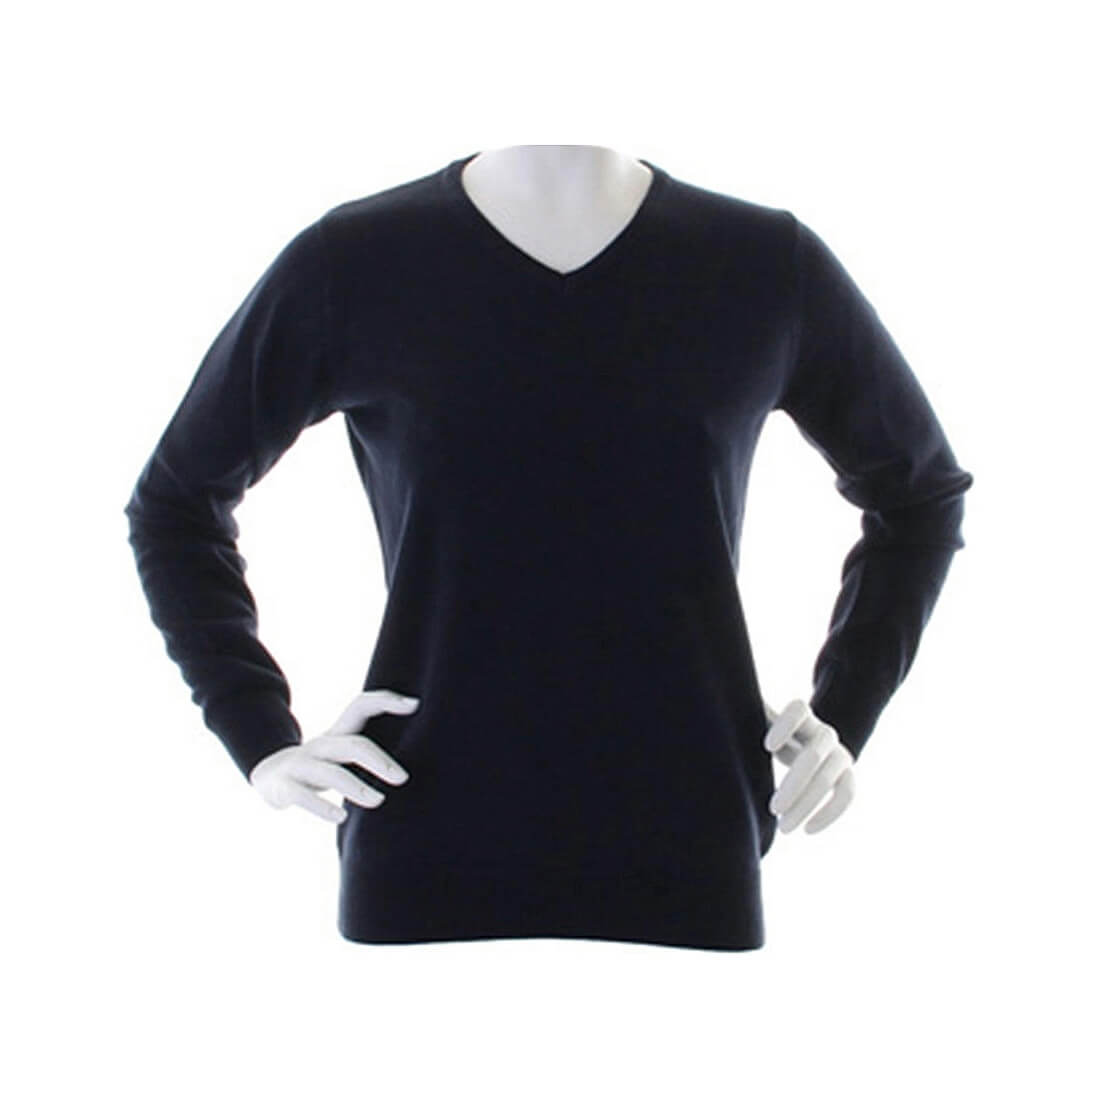 Womens Arundel V-Neck Sweater - Les vêtements de protection